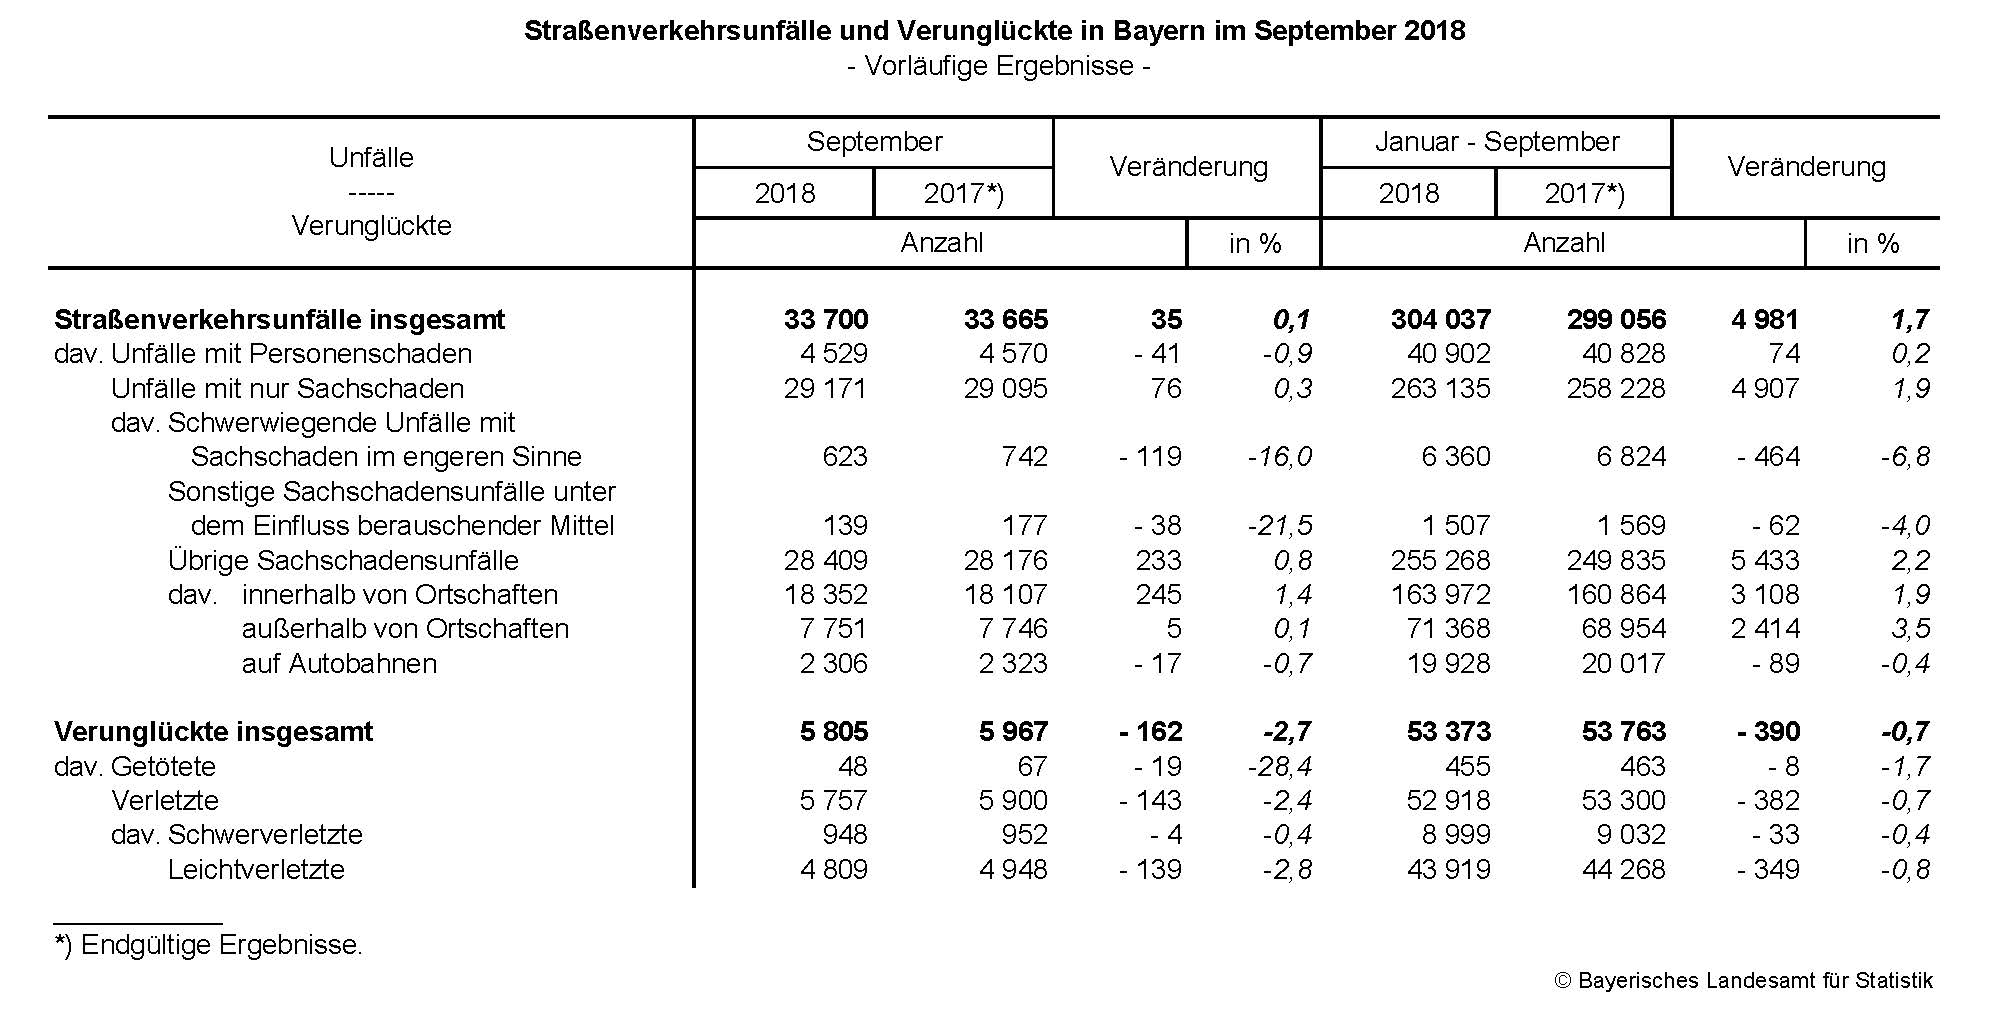 Straßenverkehrsunfälle und Verunglückte in Bayern im September 2018